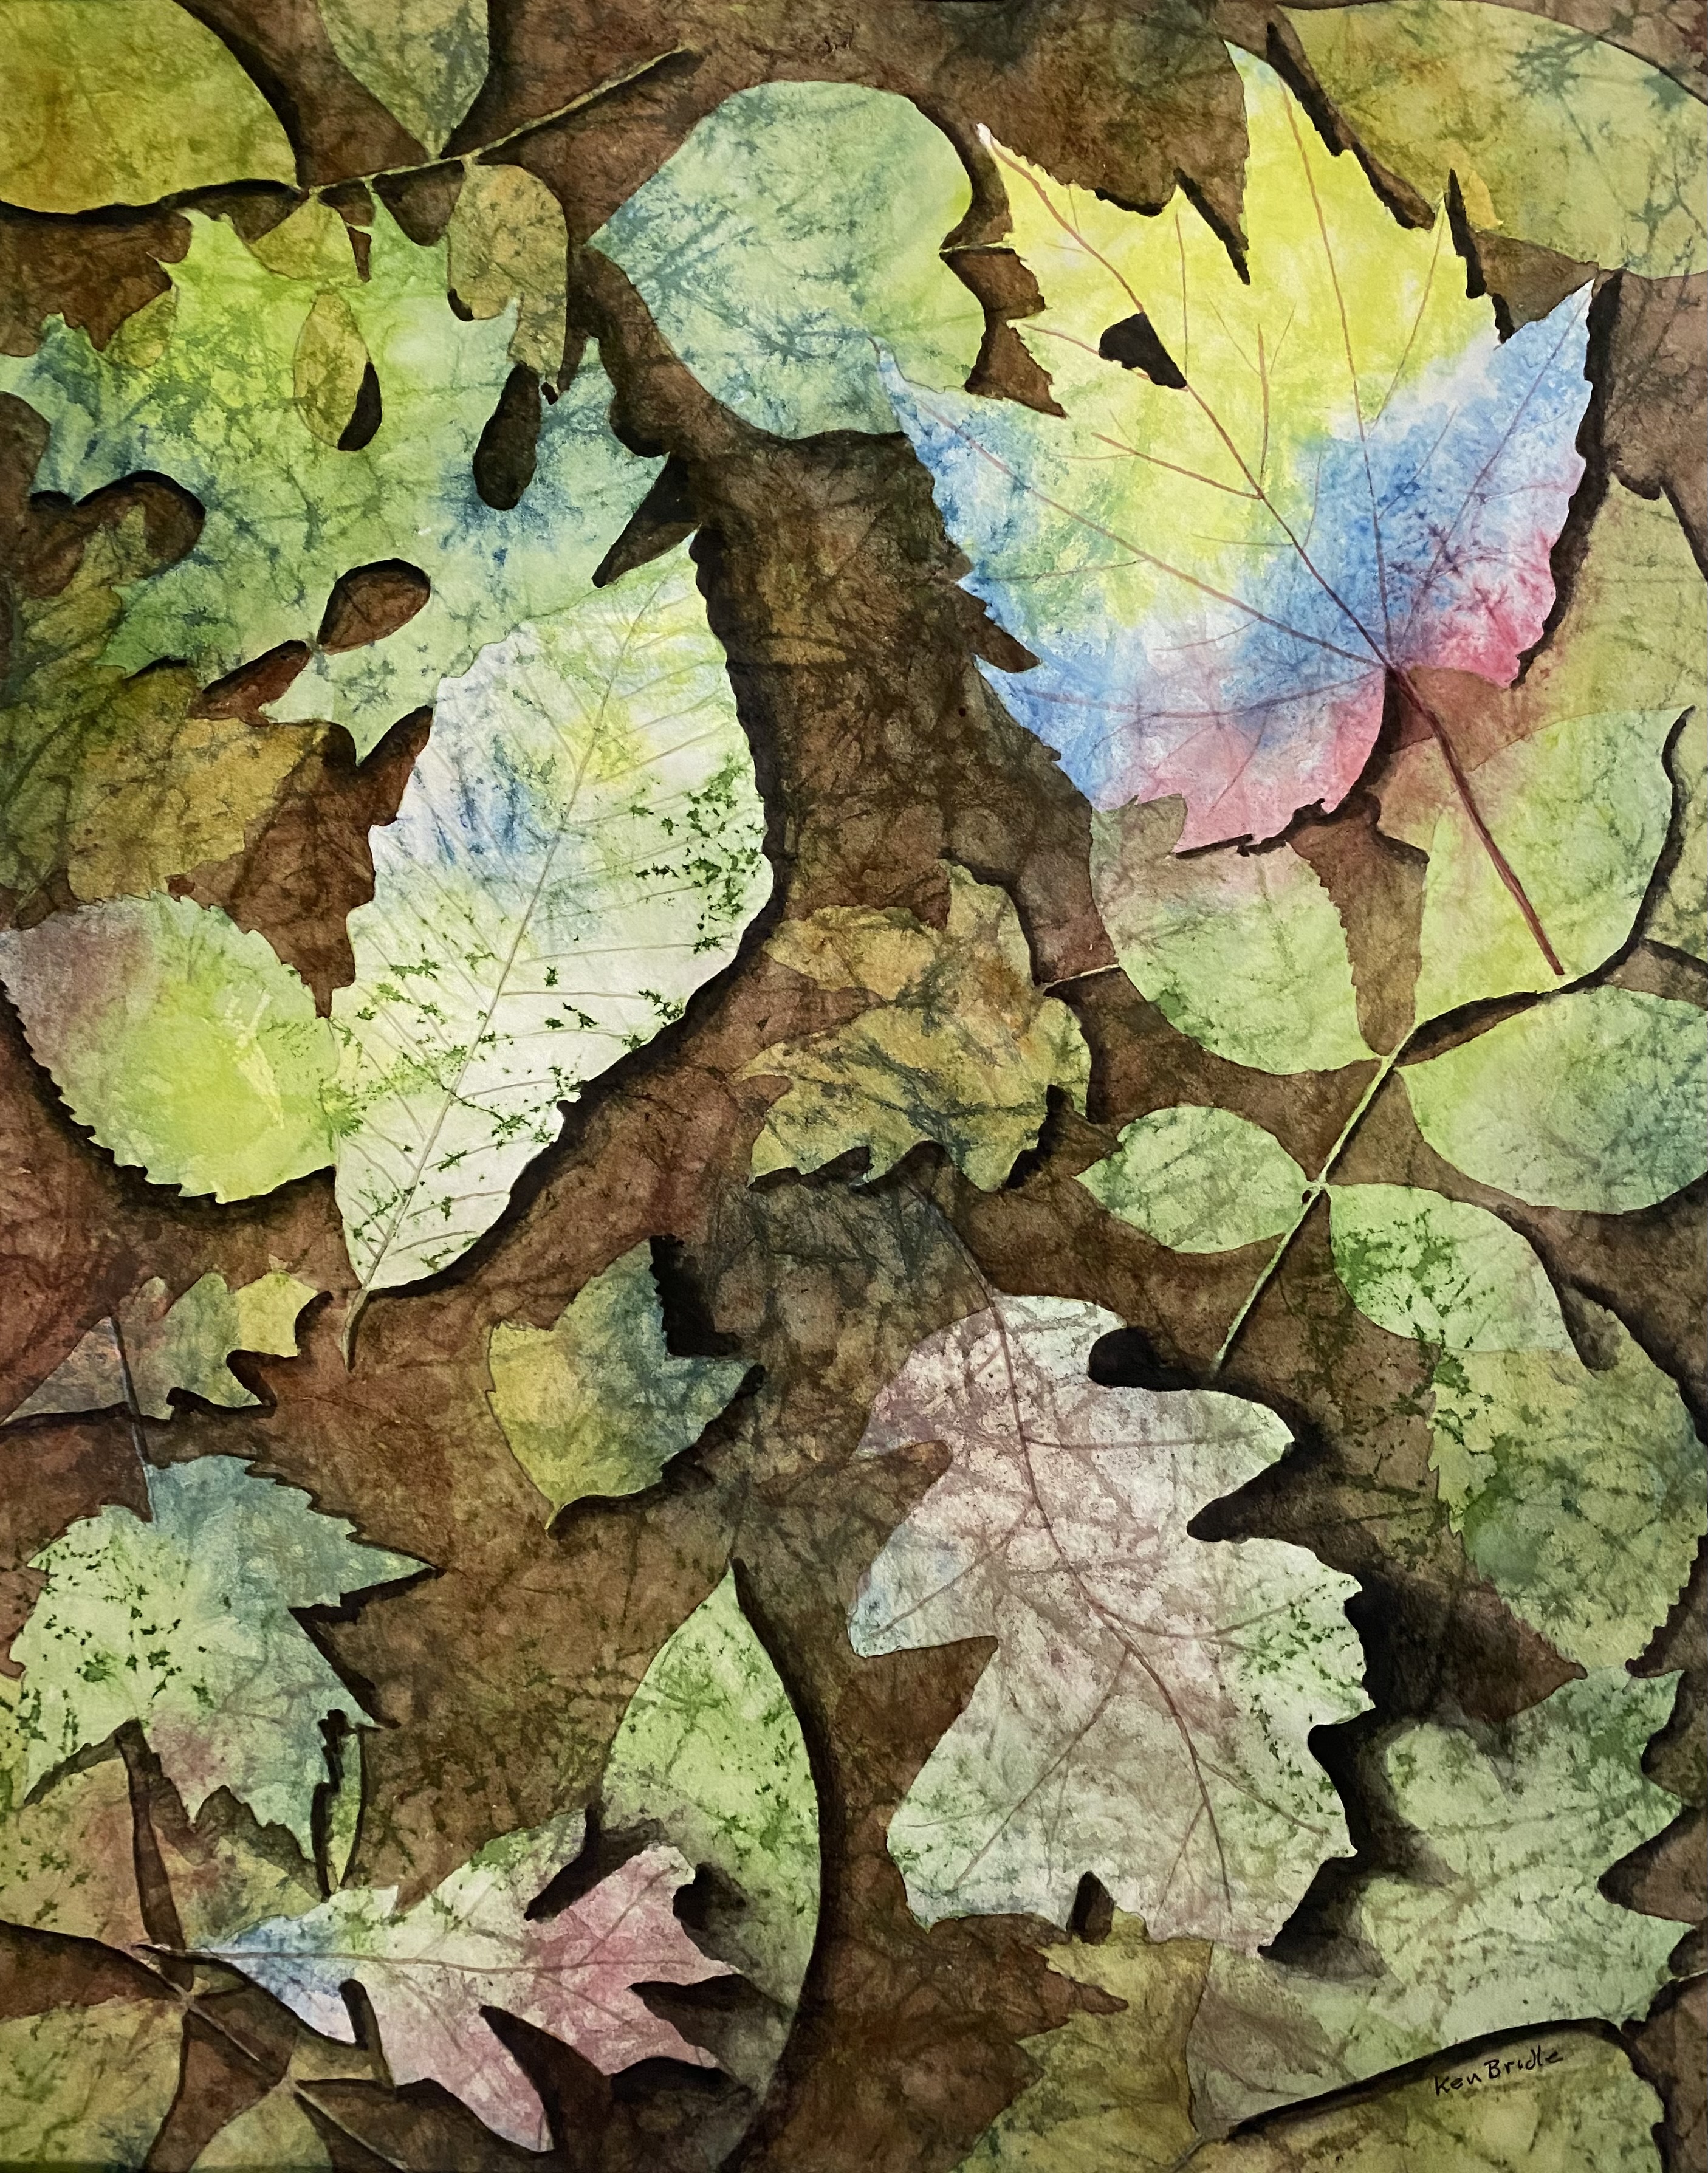 Leaf collage by Ken Bridle header image